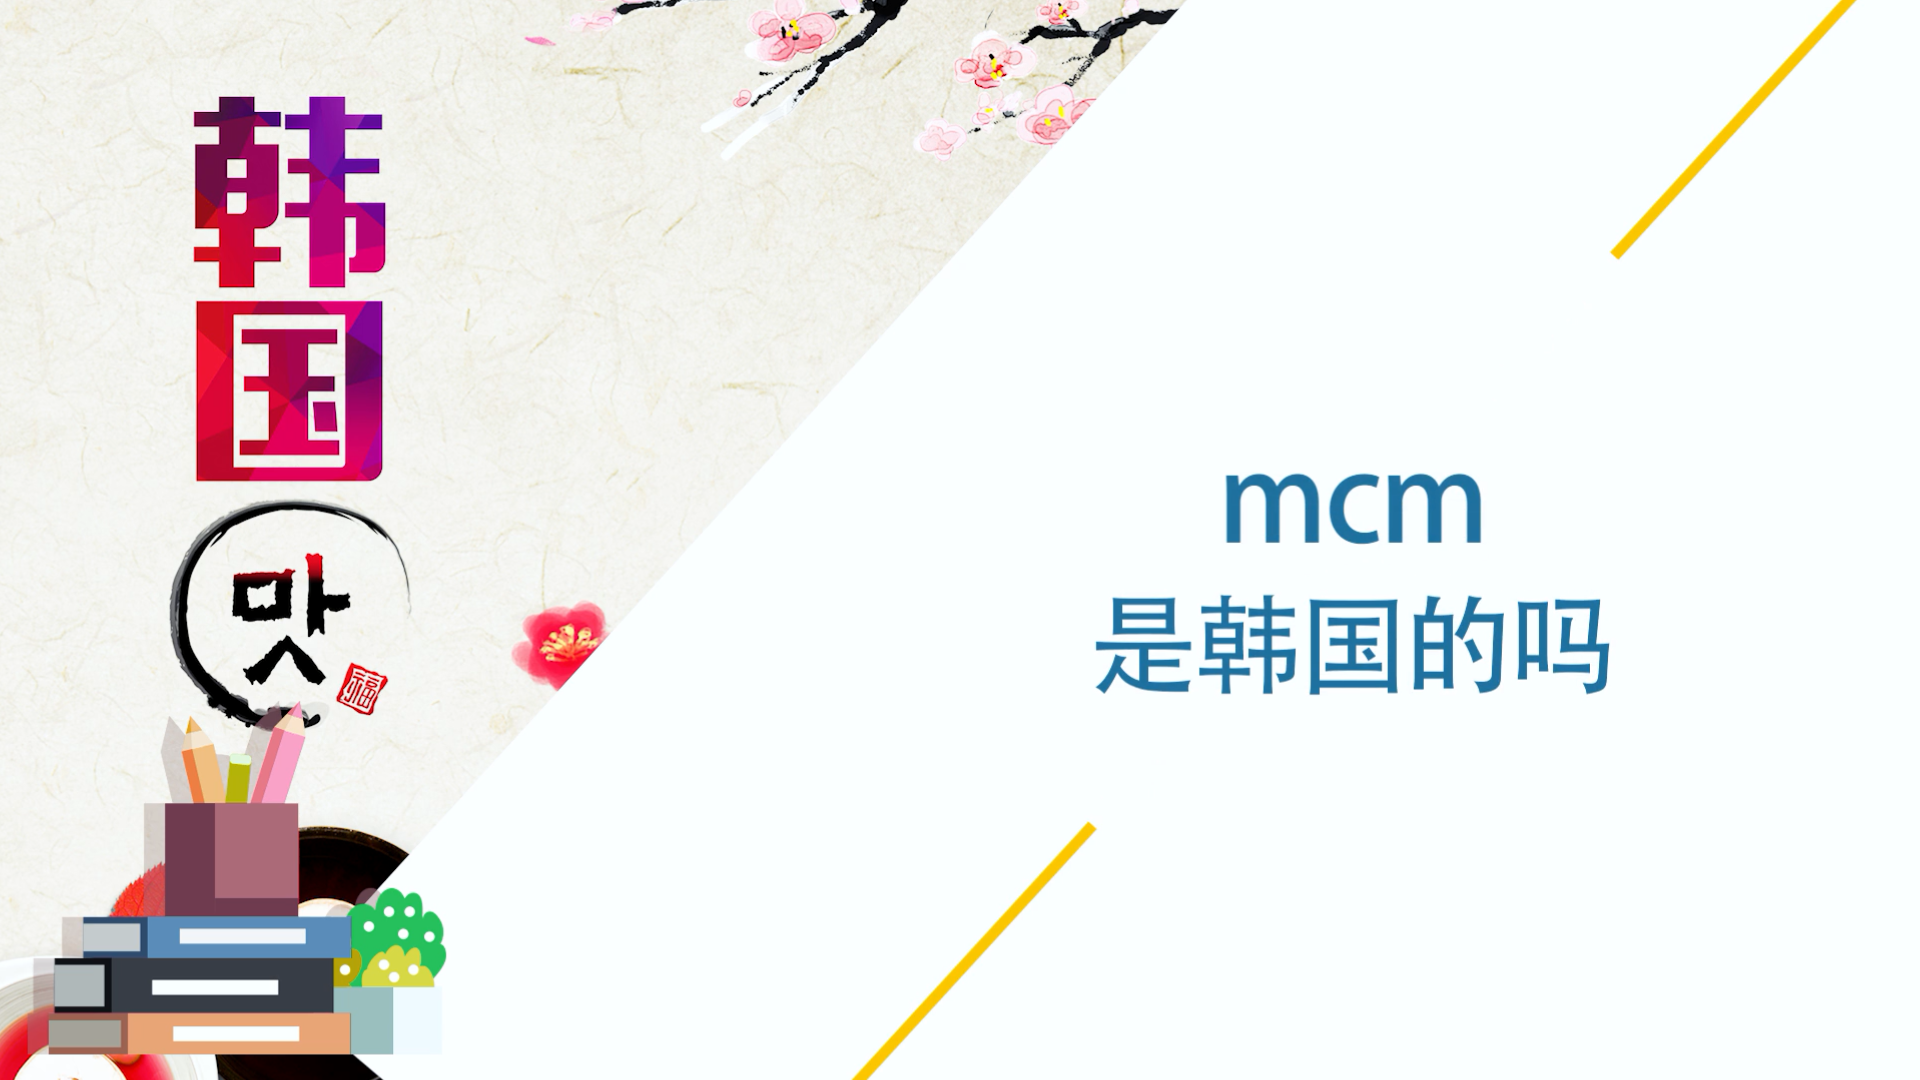 mcm是韩国的吗